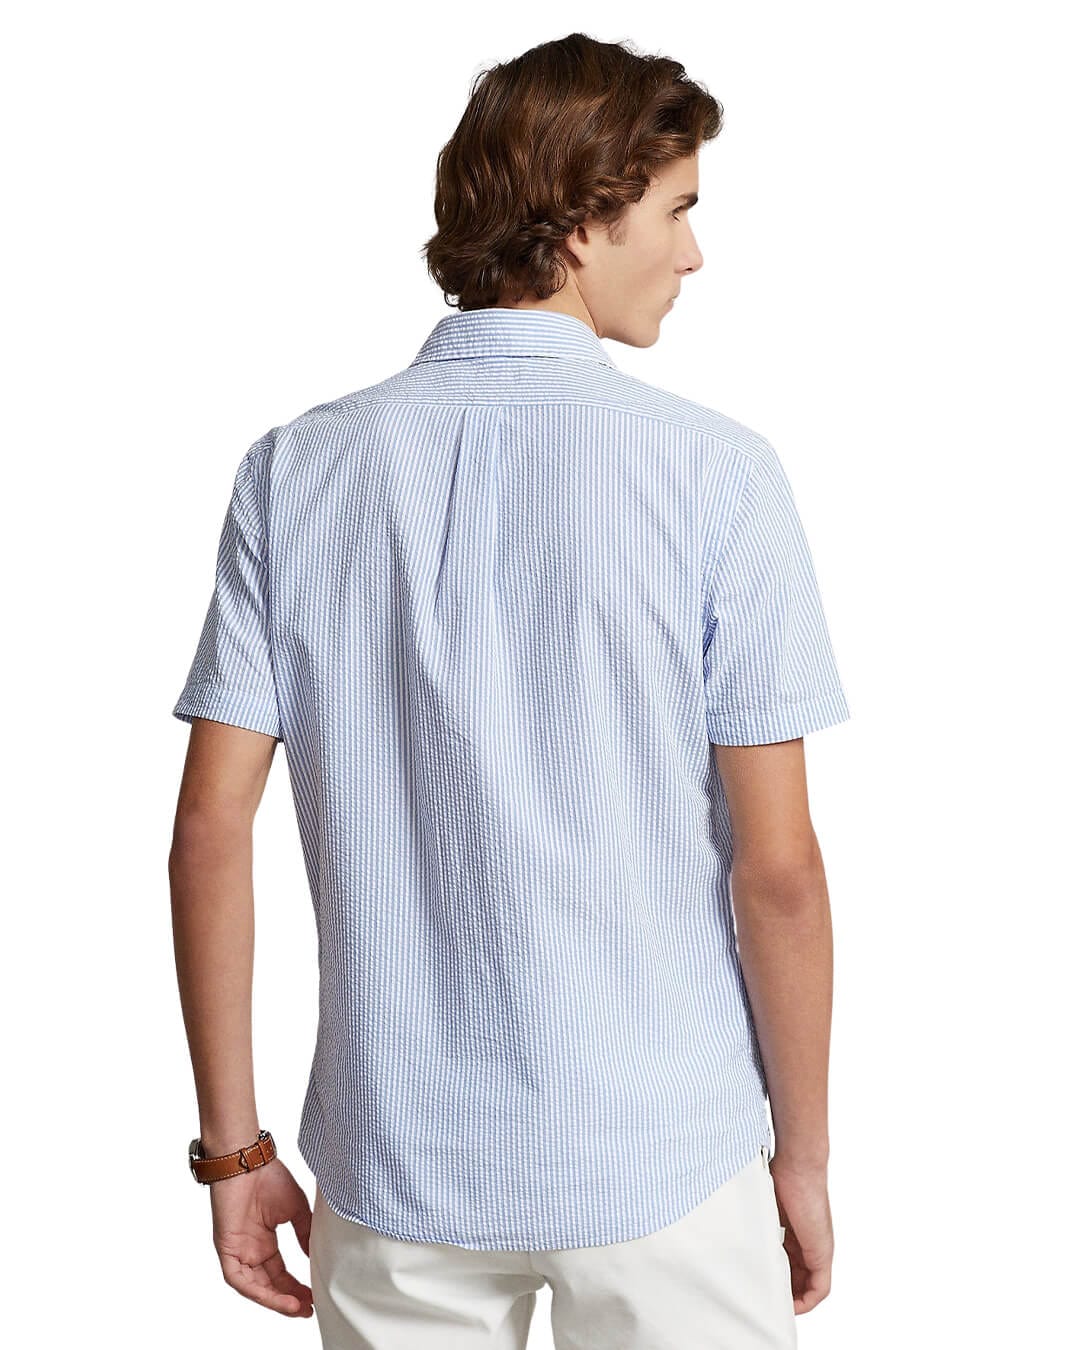 Polo Ralph Lauren Shirts Polo Ralph Lauren Custom Fit Blue Seersucker Shirt